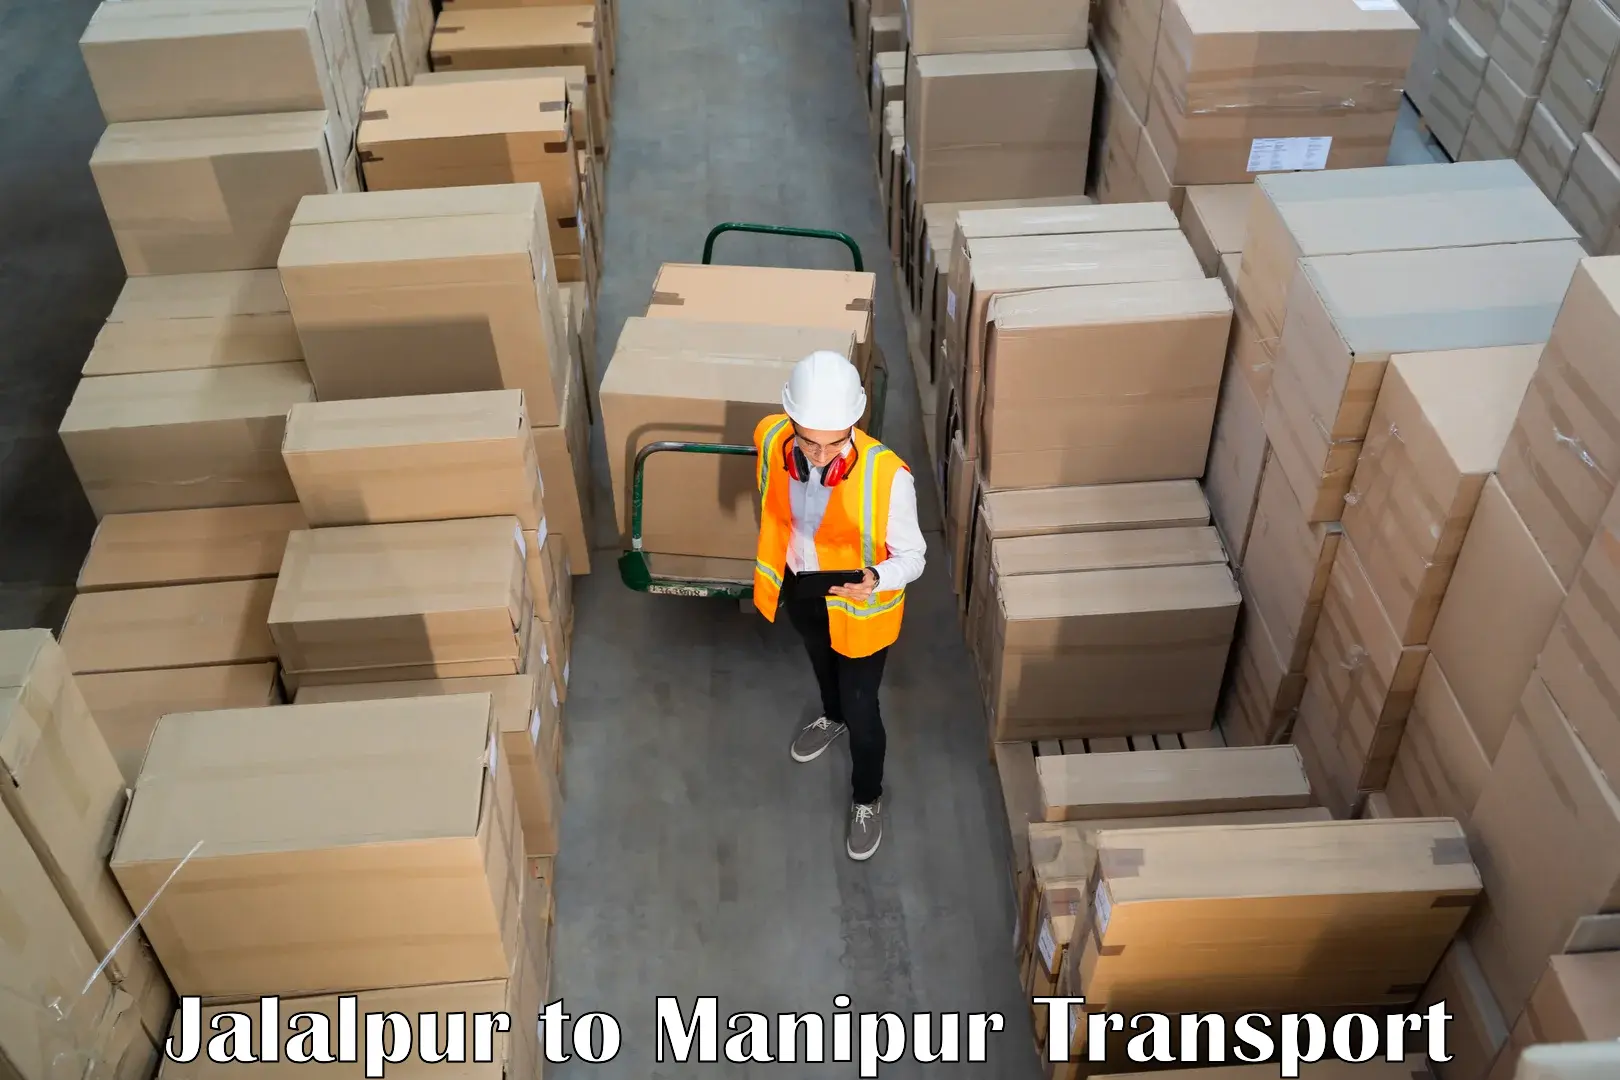 Online transport service Jalalpur to Chandel